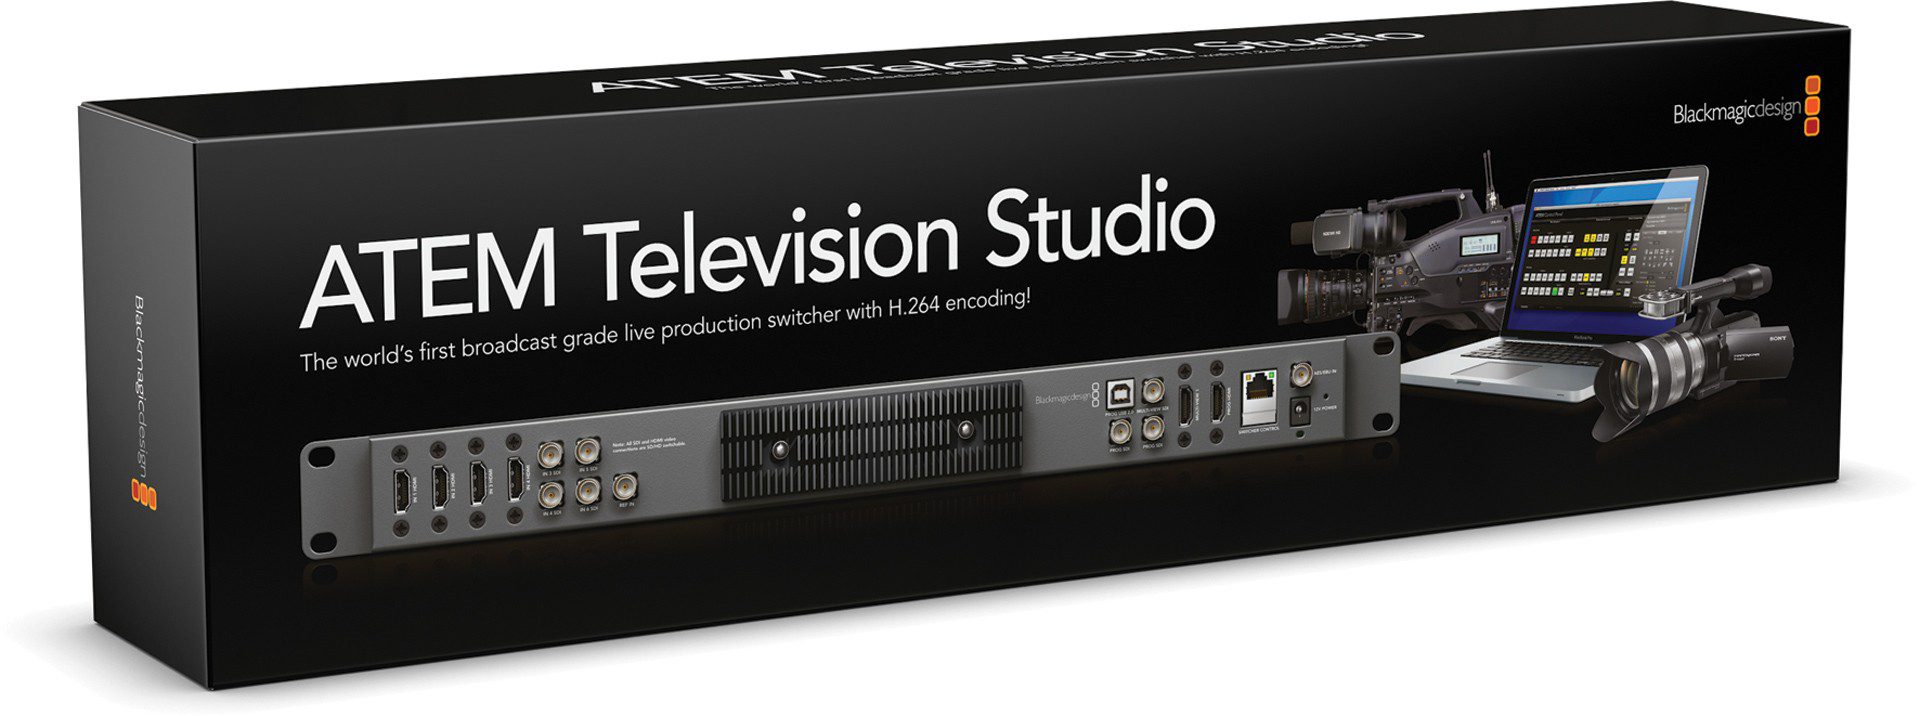 Blackmagic ATEM Television Studio